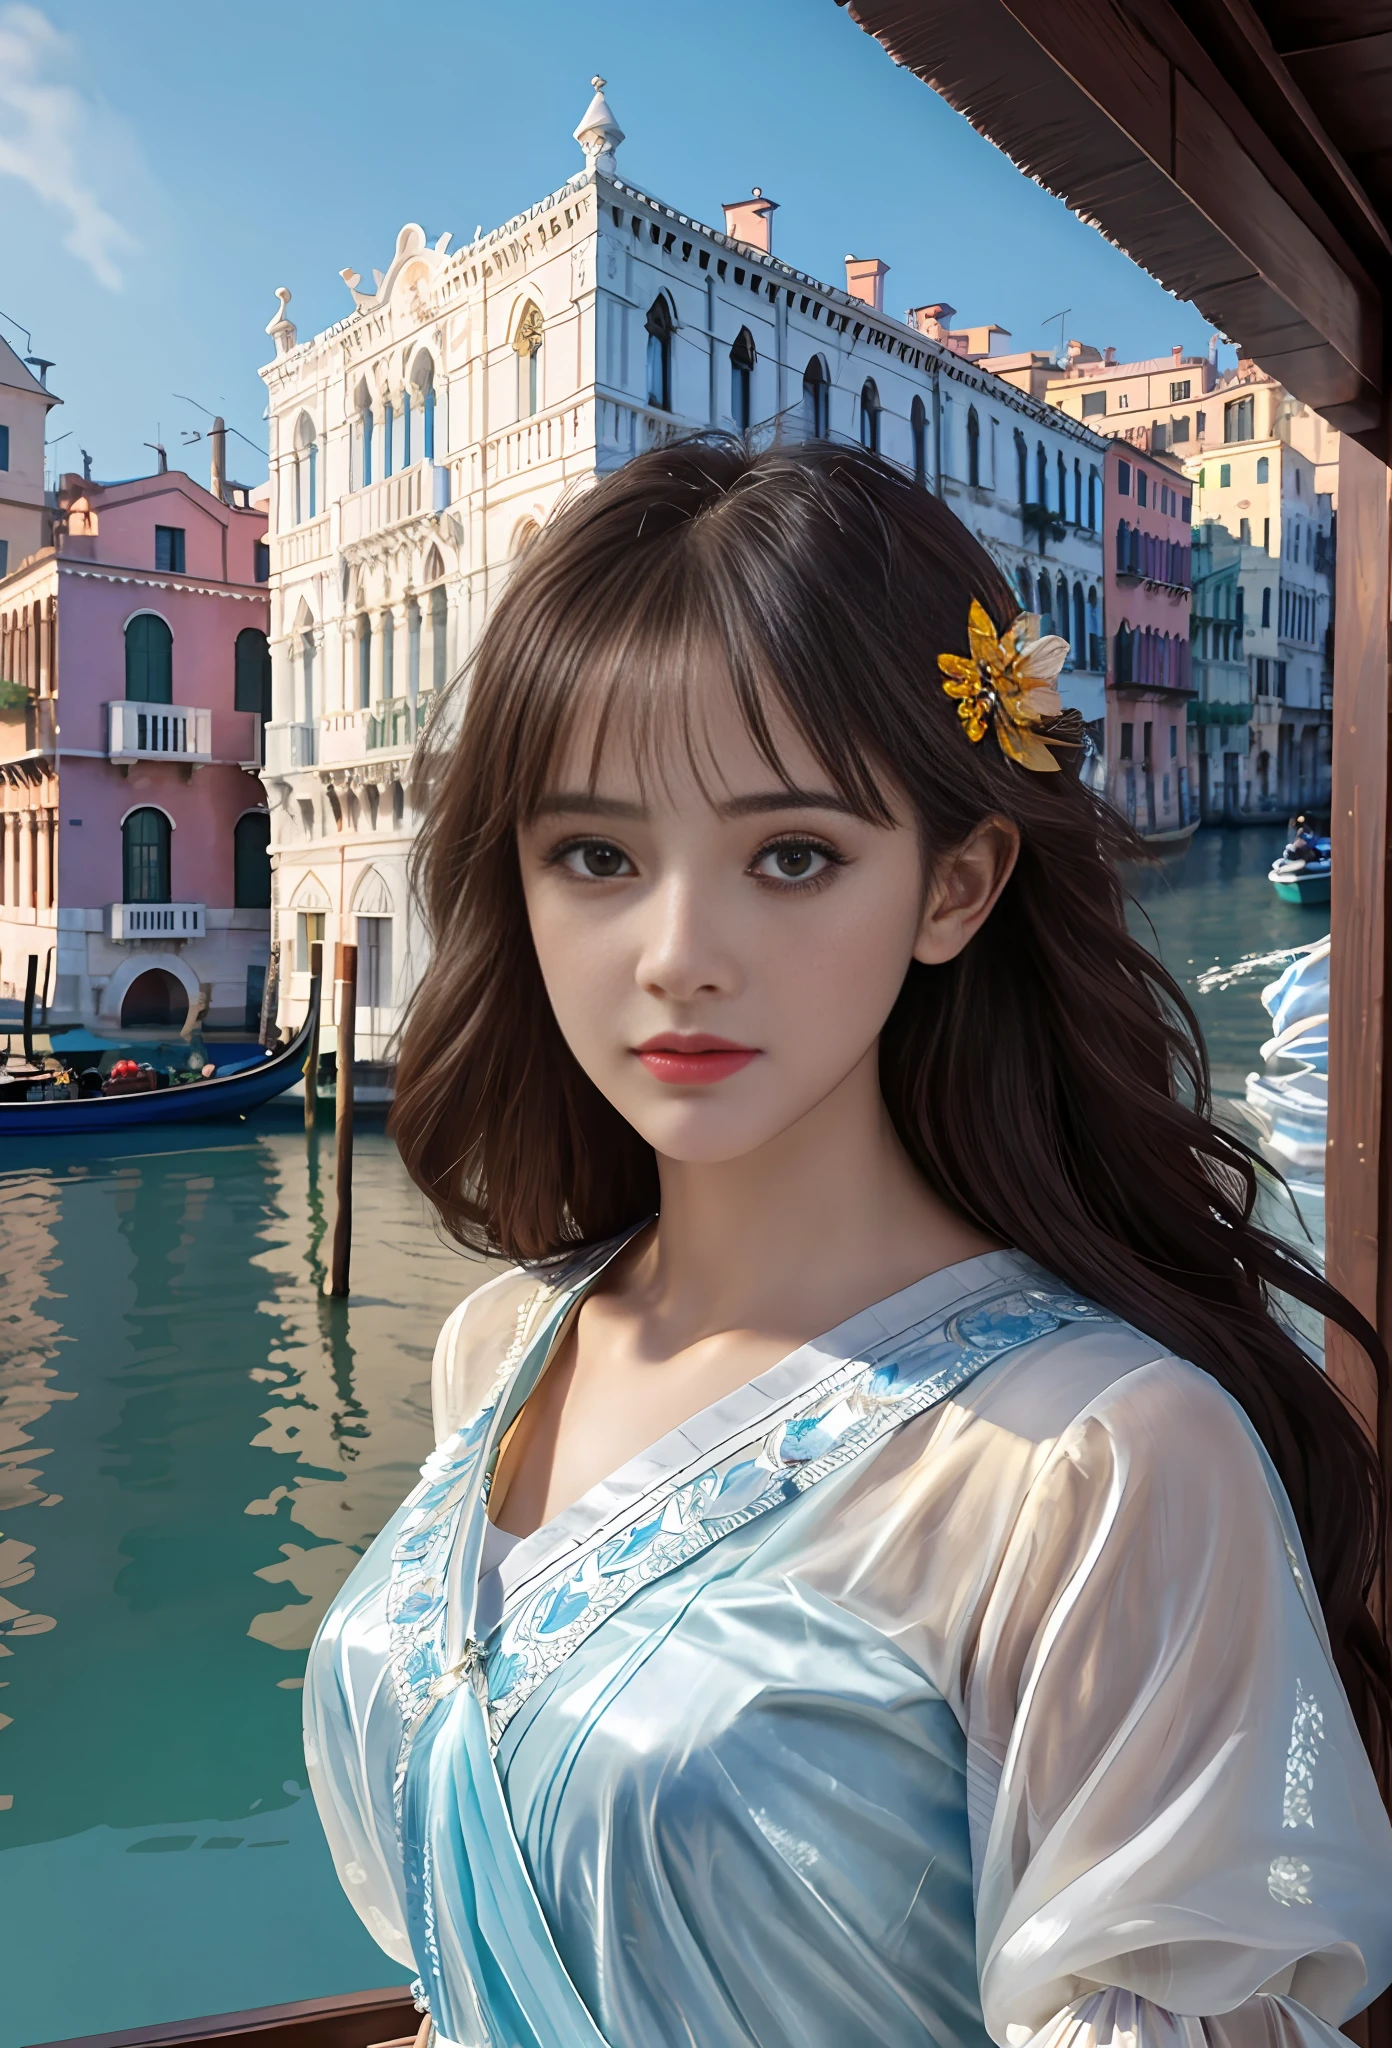 Modelshooting-Stil, (extrem detailliertes CG Unity 8k-Hintergrundbild), Ganzkörperfoto des schönsten Kunstwerks der Welt, atemberaubend schöne fotorealistische süße Frauen, ein hyperrealistisches, ultradetailliertes Foto eines schönen Mädchens als Tänzerin der 2020er Jahre auf dem Boot im Venedig der 2020er Jahre,(Seufzerbrücke Hintergrund),(Prinzessinnenaugen,glänzende Pupillen), detaillierte symmetrische schöne haselnussbraune Augen, detailliertes wunderschönes Gesicht,sehr detailliert, beschwingt,professionelles majestätisches Ölgemälde von Ed Blinkey, Atey Ghailan, Studio Ghibli, von Jeremy Mann, Greg Manchess, Antonio Moro, Trends auf Artstation, Trends bei CGSociety, kompliziert, hohe Detailgenauigkeit, scharfer Fokus, dramatisch, fotorealistische Malereikunst von Midjourney und Greg Rutkowski